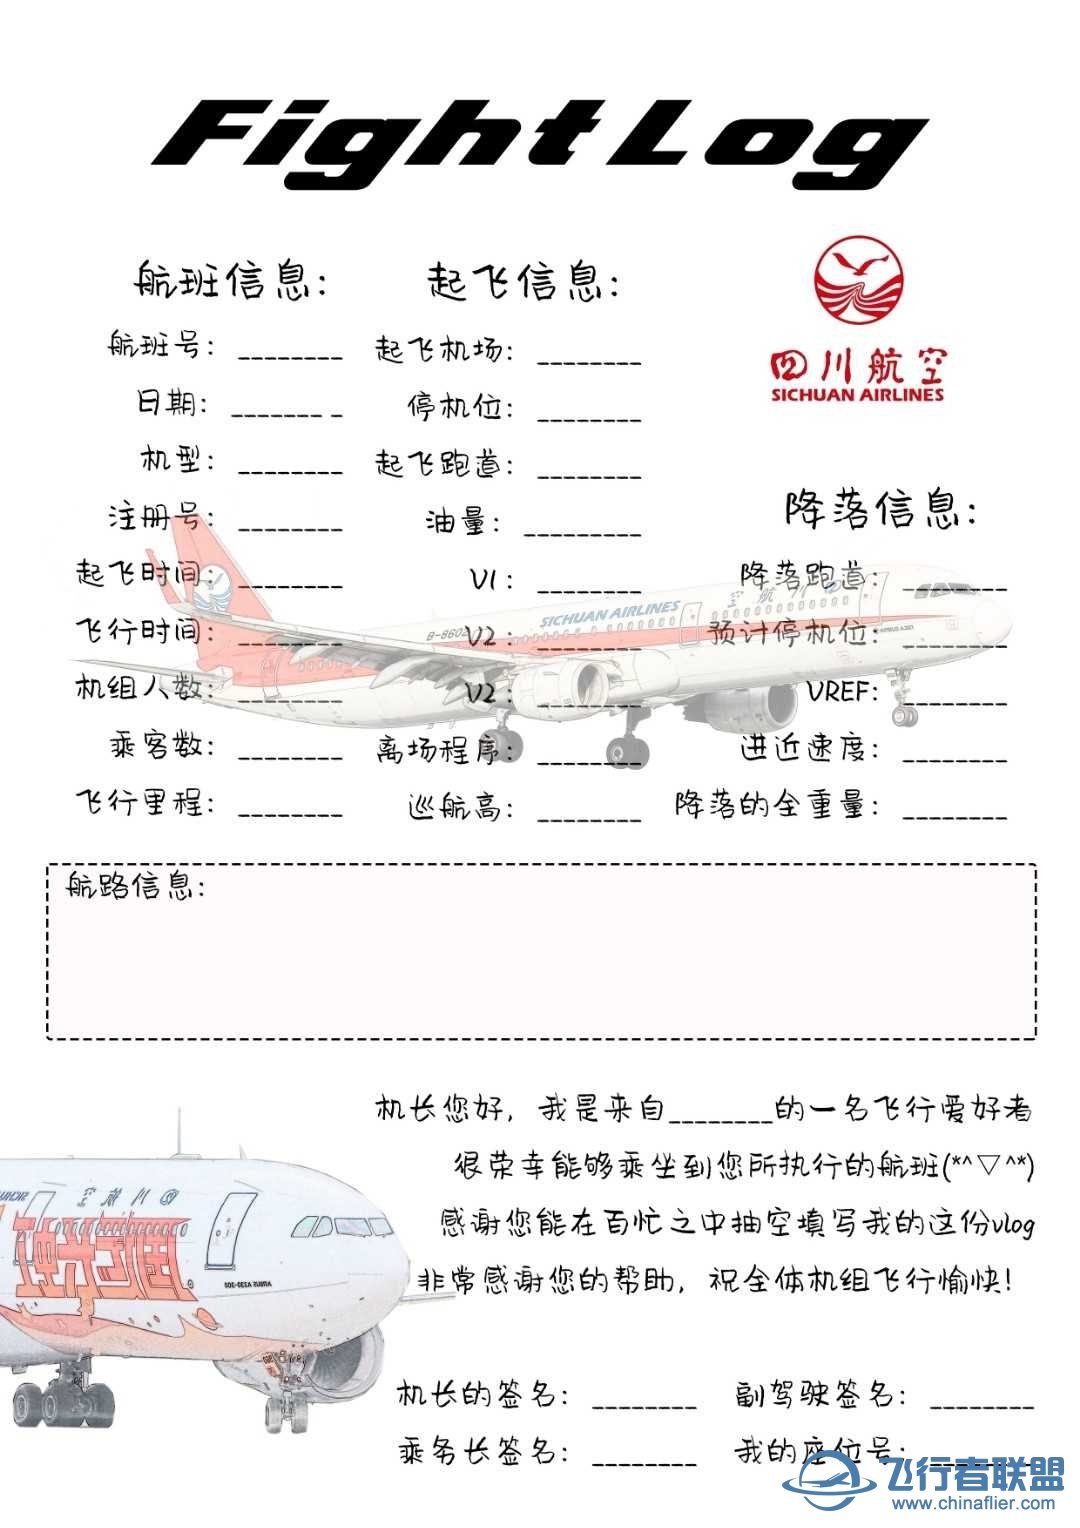 原创飞行笔记——航空公司-8926 